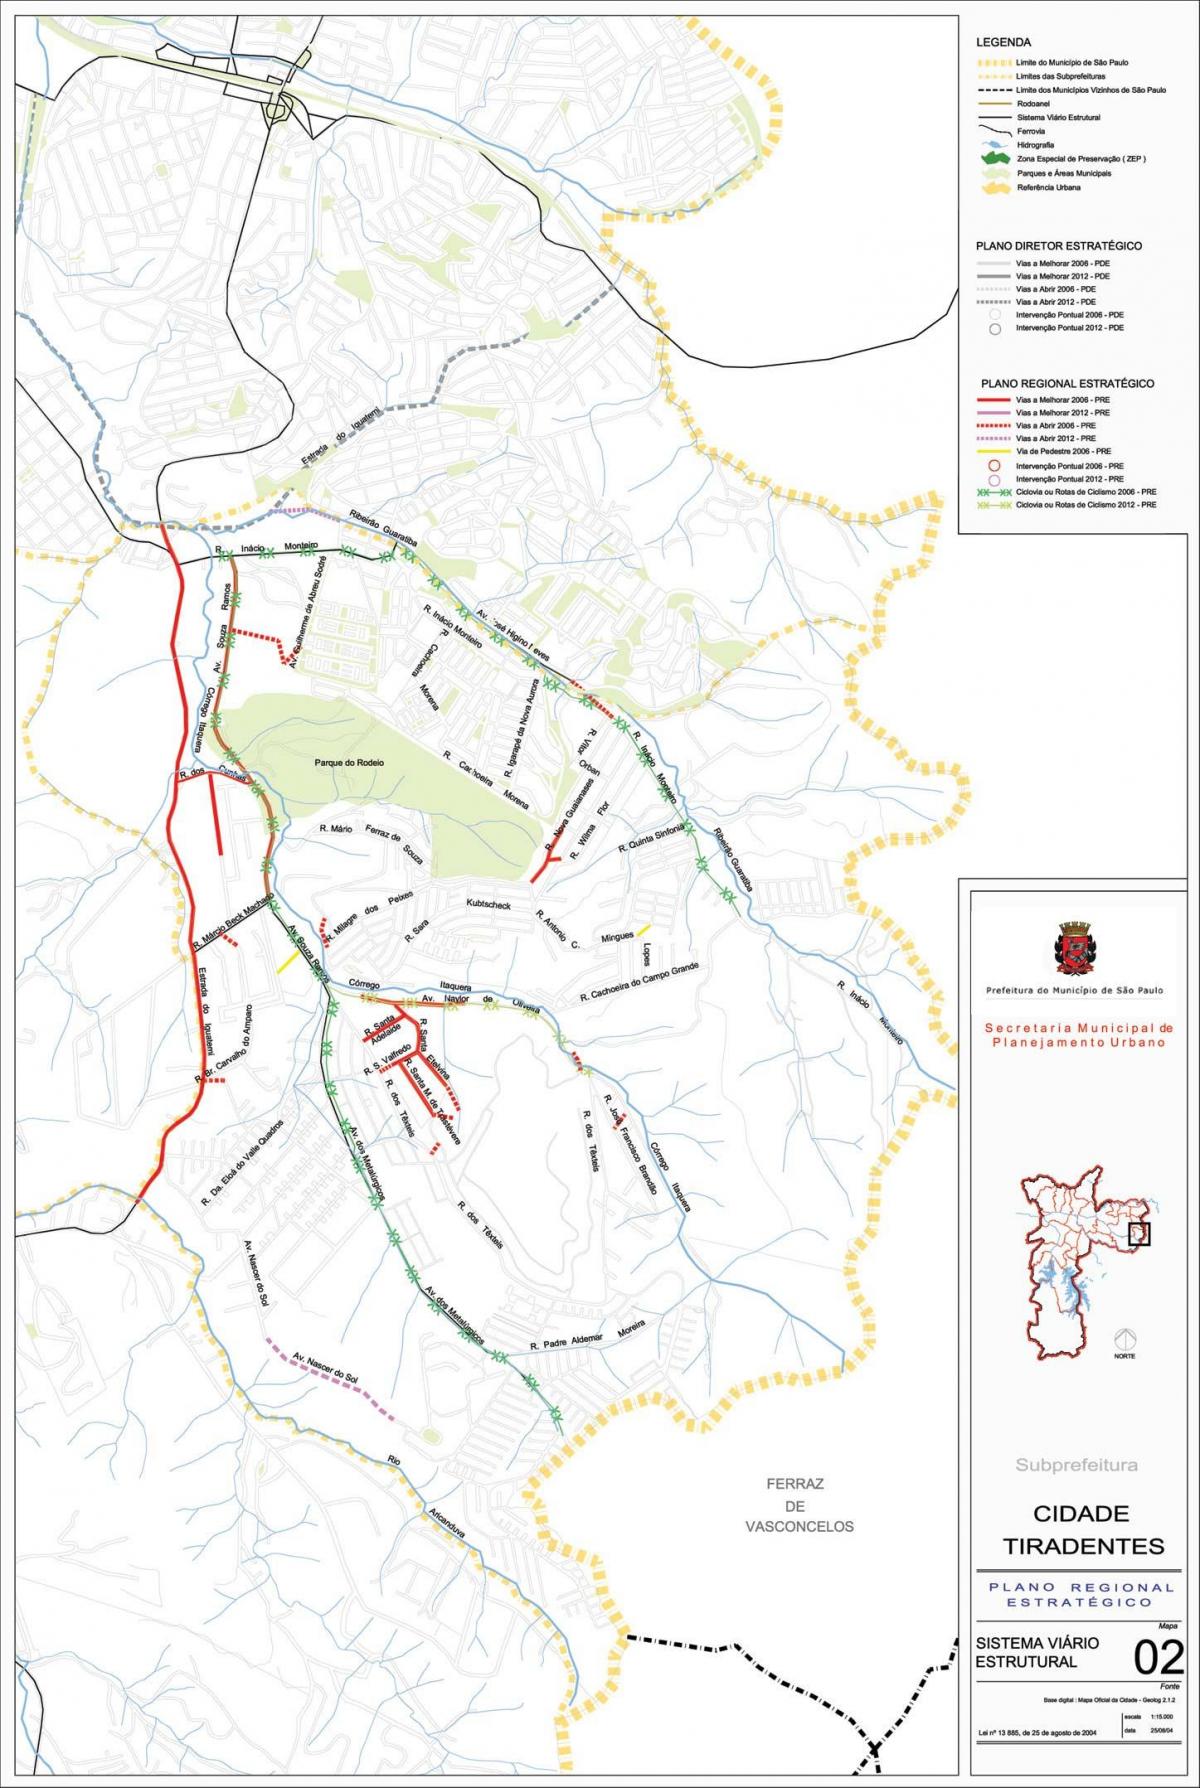 Map of Cidade Tiradentes São Paulo - Roads